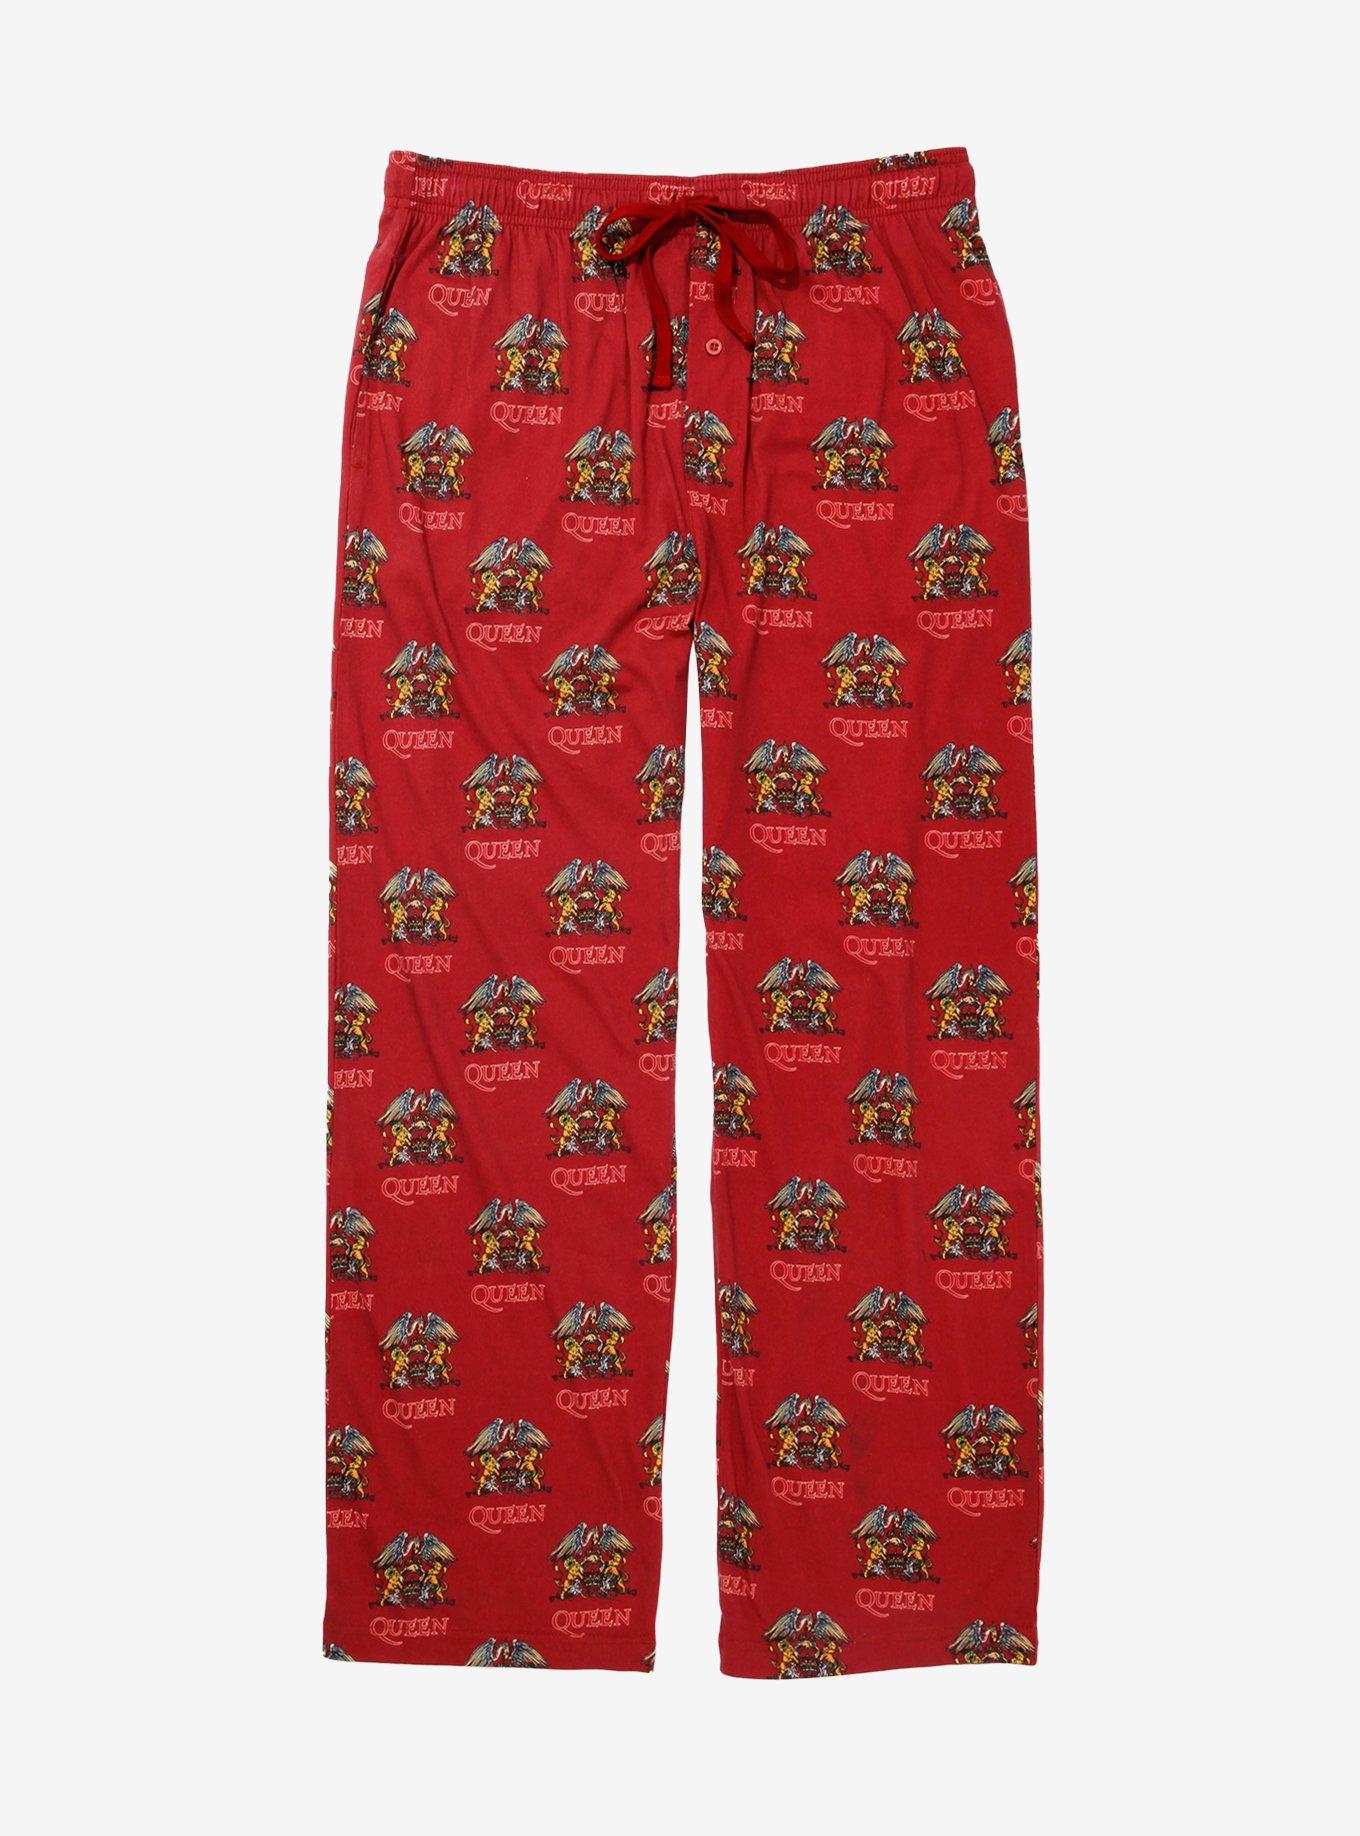 W2C This polo red pajama pants (please approve) : r/FashionReps